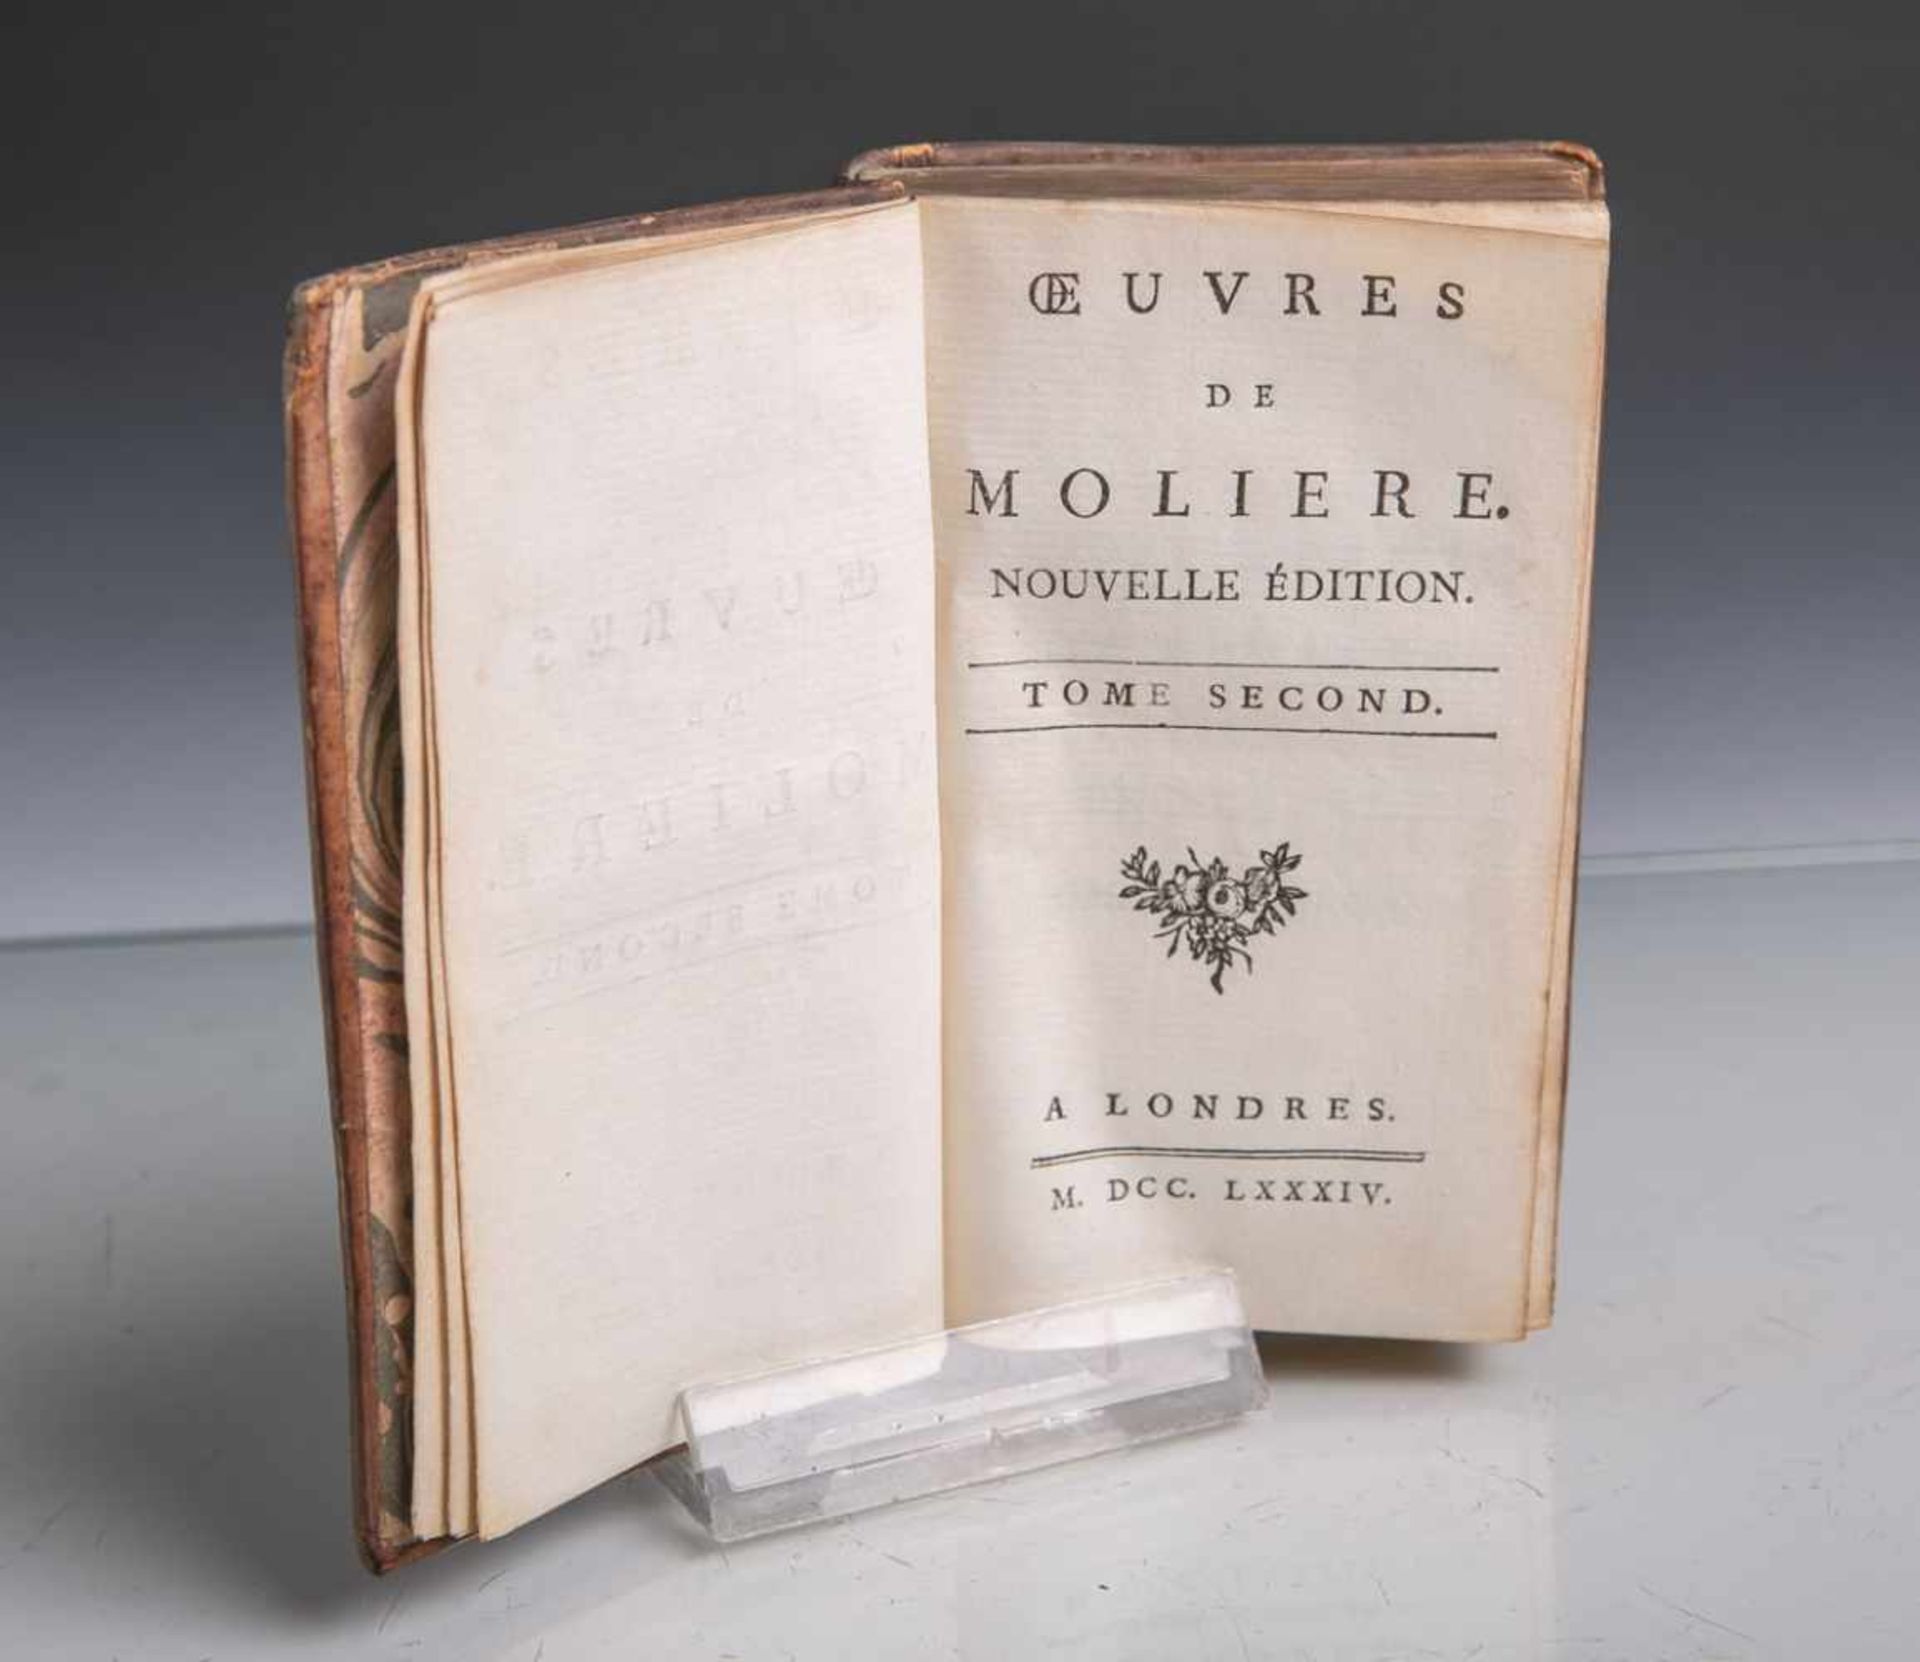 Buch "Oeuvre de Moliere", neue Ausgabe, Band 2, A Londres Verlag, 1784, 323 S.,